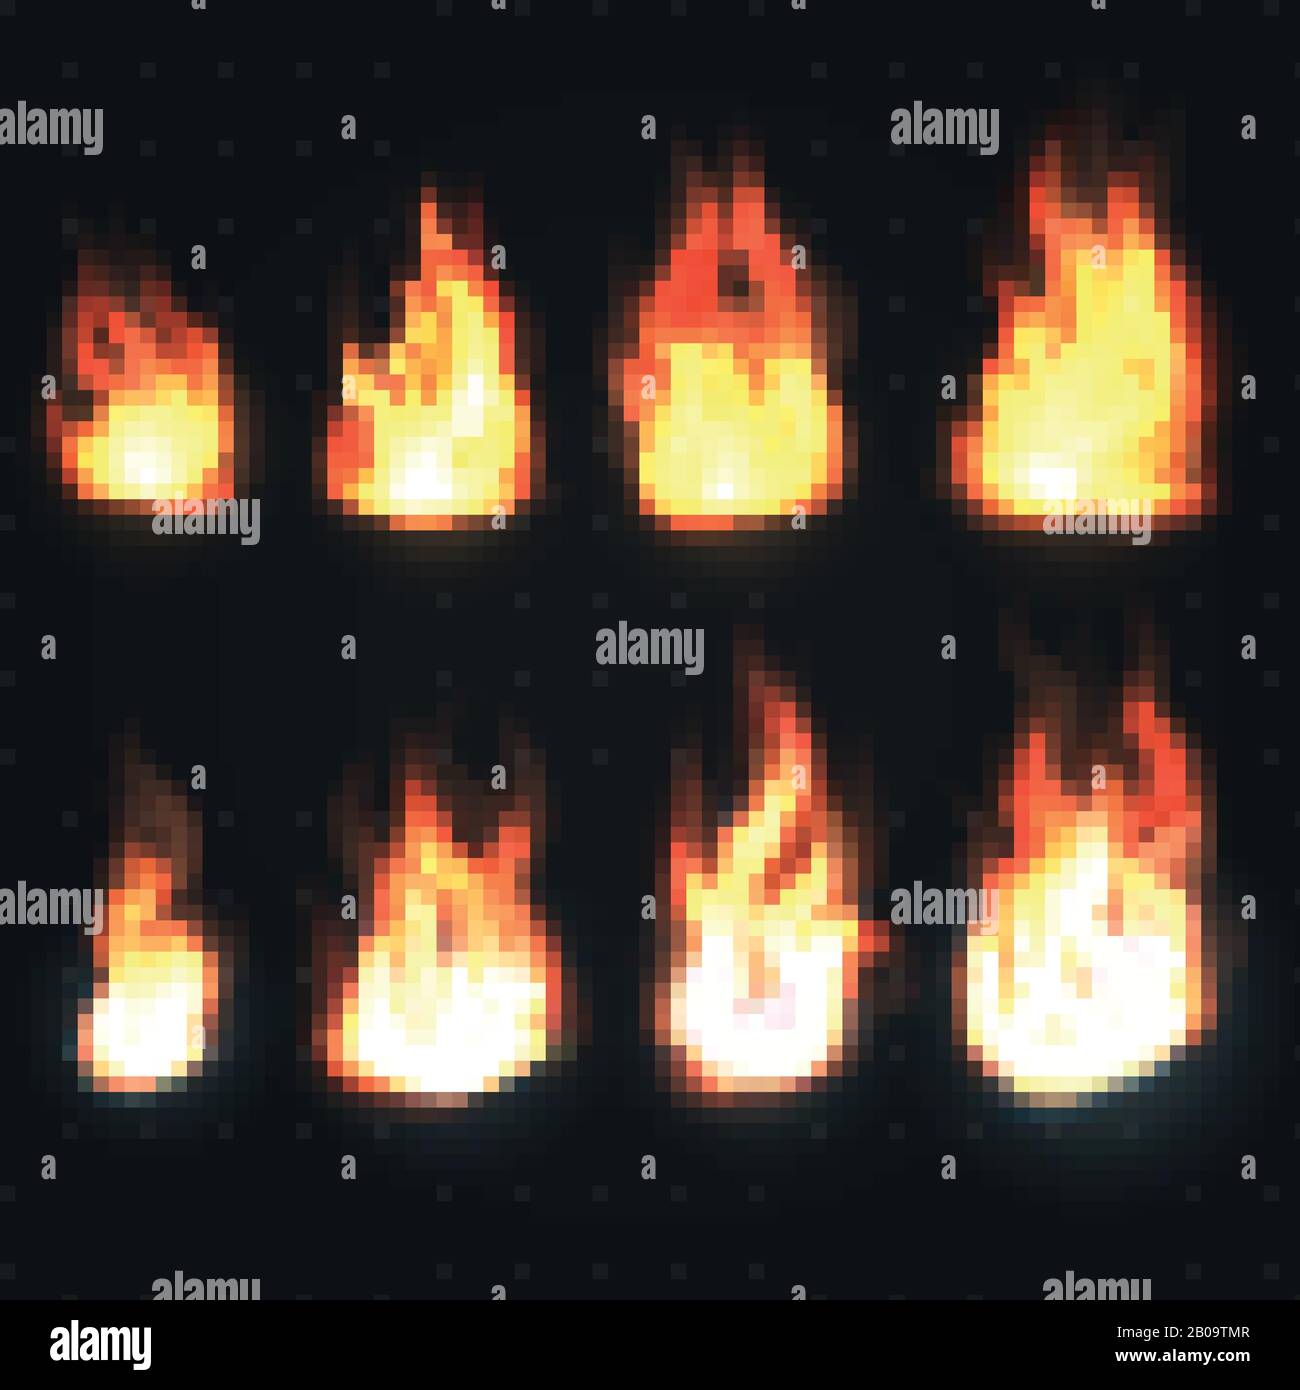 Vektorsatz für isolierte Feuerflammen, Leistungs- und Energiesymbole. Flammenbrand, Abbildung der Wärmekraftflamme Stock Vektor